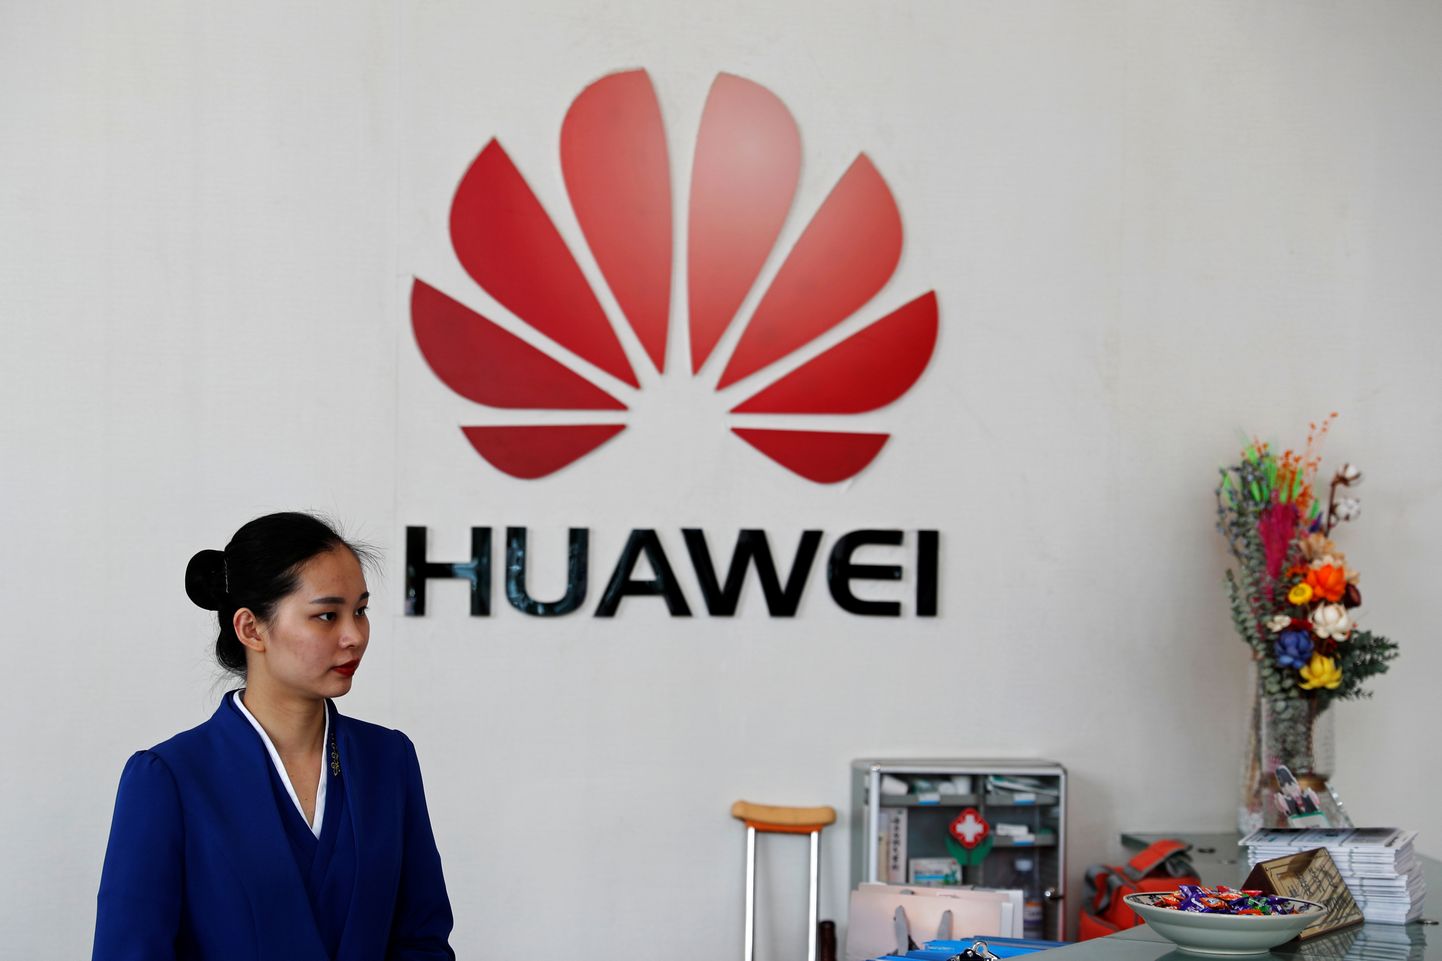 Huawei töötaja ja ettevõtte logo Shenzhenis Hiinas, Guangdongi provintsis.